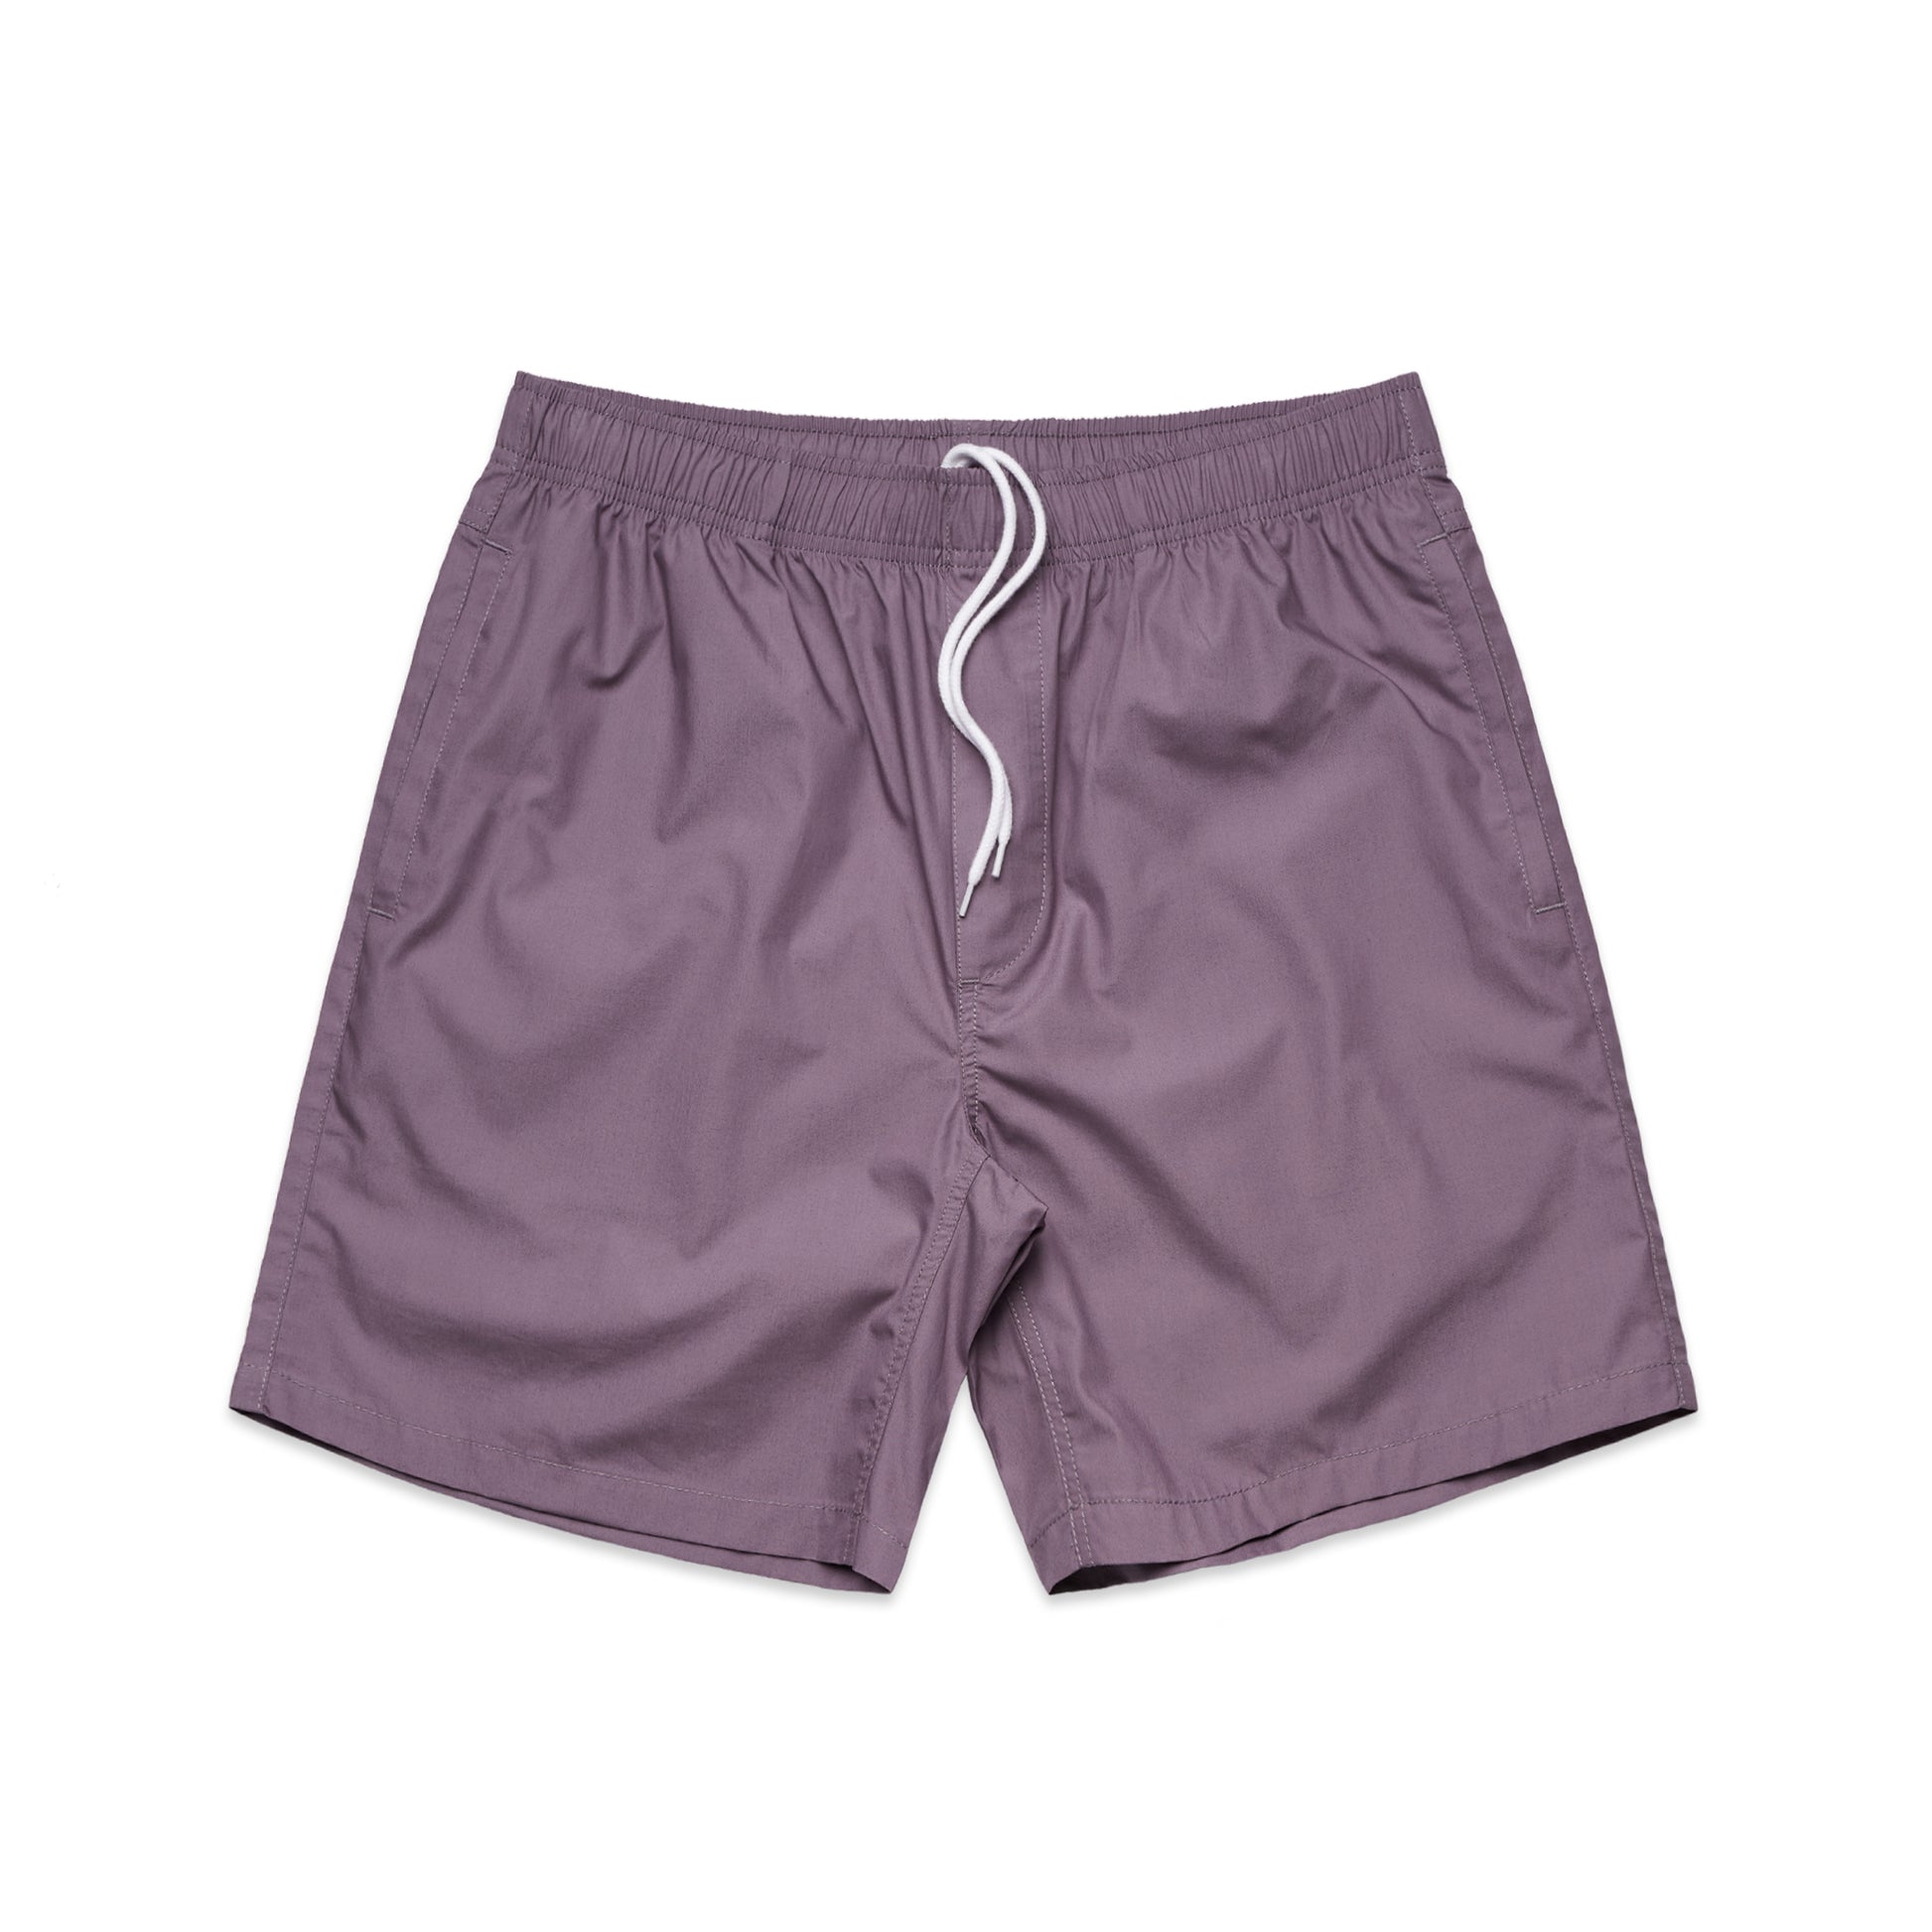 Ascolour Mens Beach Shorts (5903)